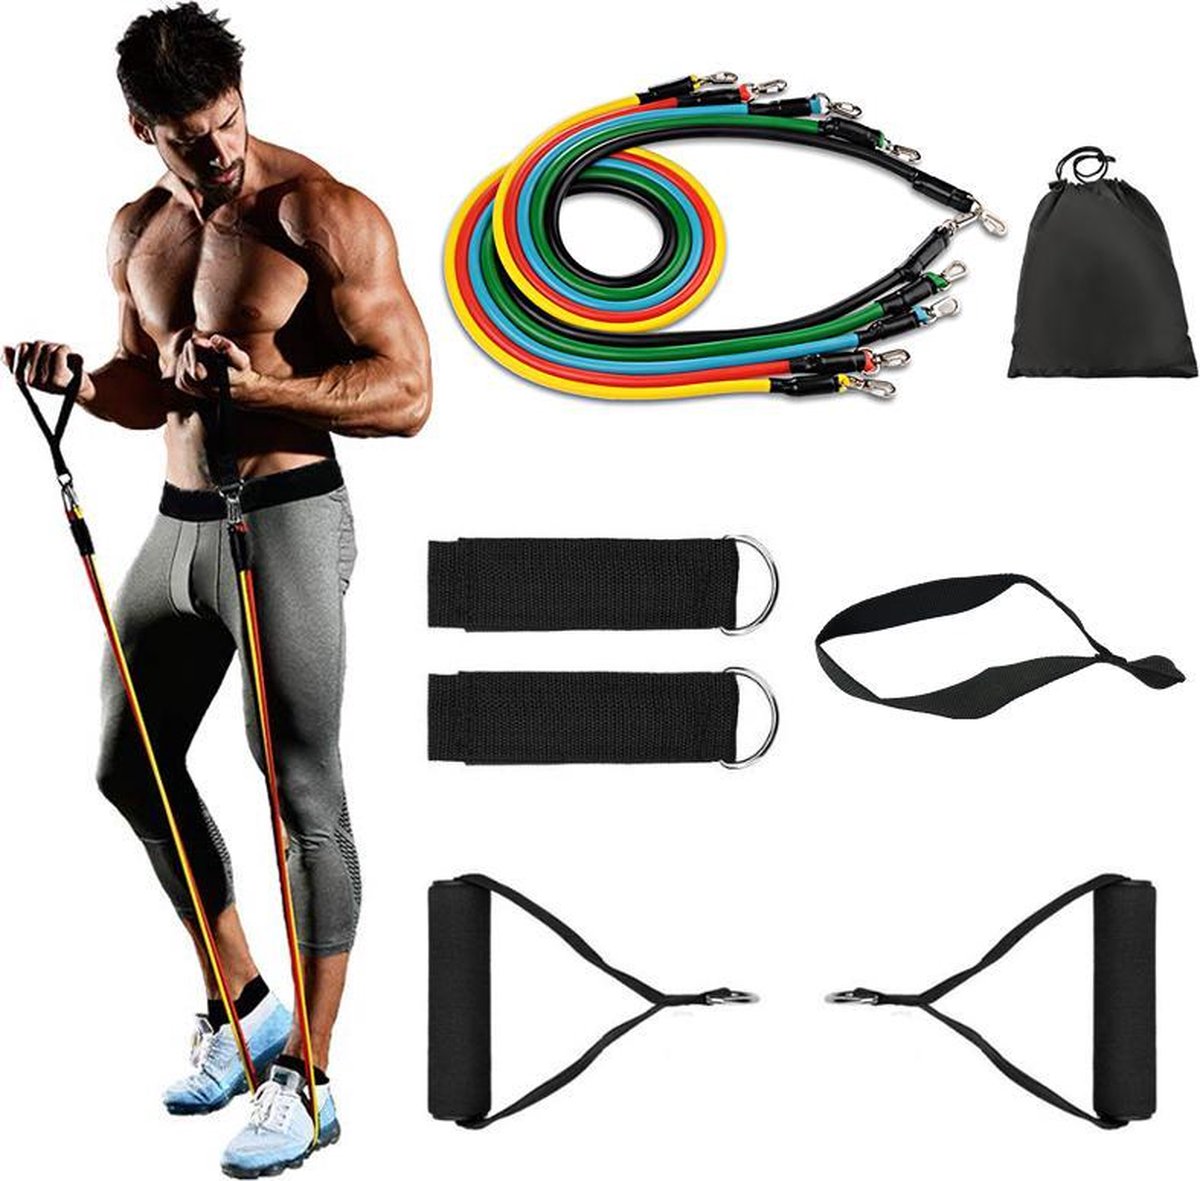 Fitness elastiek - Sportelastieken - Elastieken weerstandsbanden set - IWG